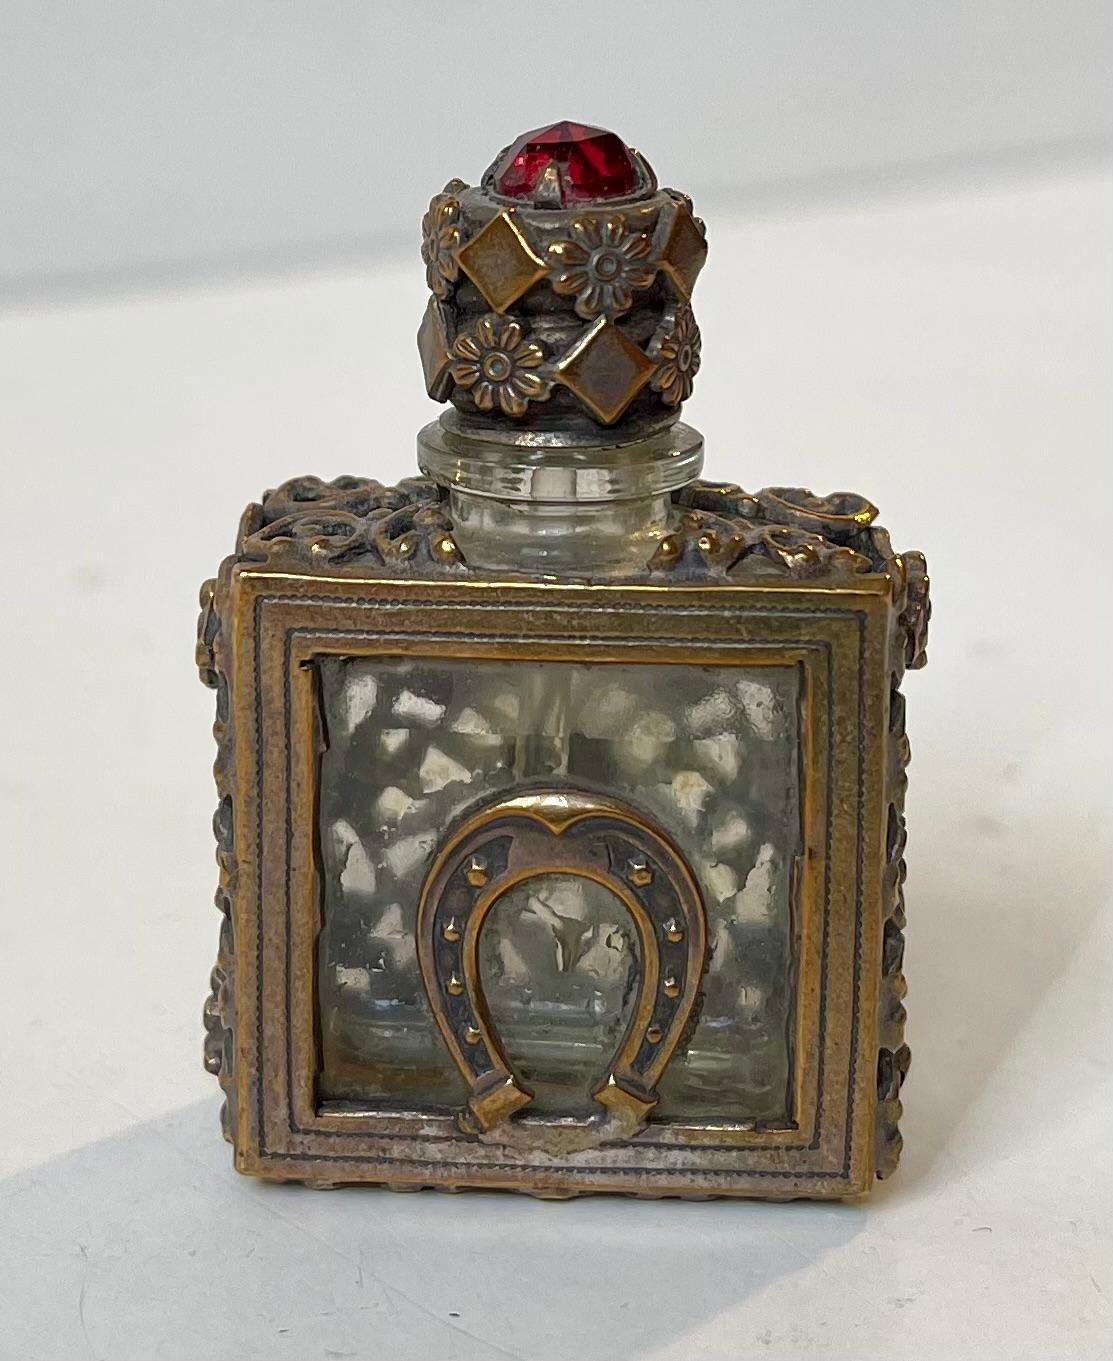 Boîte à parfum ou à parfum miniature en cristal et laiton orné. Fabriqué en Europe, probablement en Angleterre, vers 1850-1890. Il comporte un fer à cheval et son couvercle est orné d'un grenat à facettes ou d'un morceau de verre rouge. Mesures :